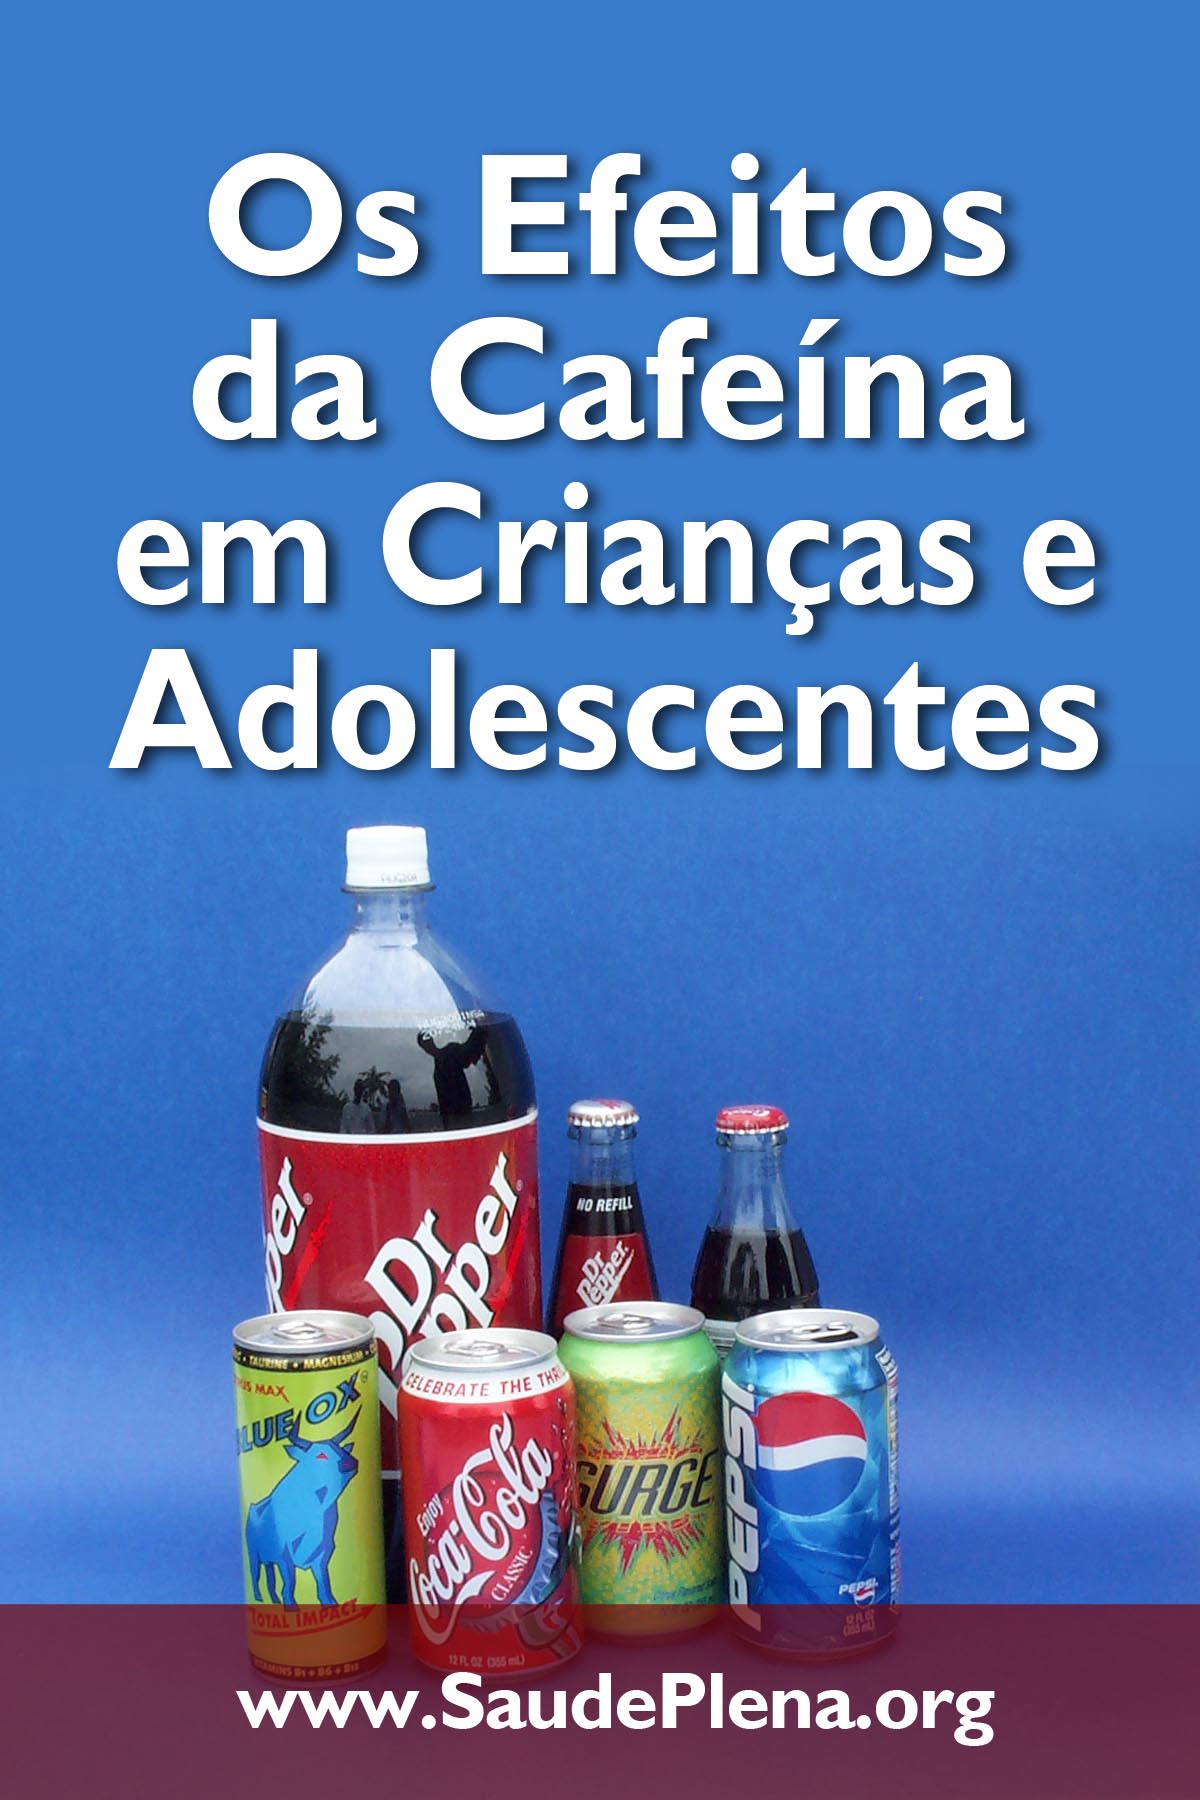 Os Efeitos da Cafeína em Crianças e Adolescentes